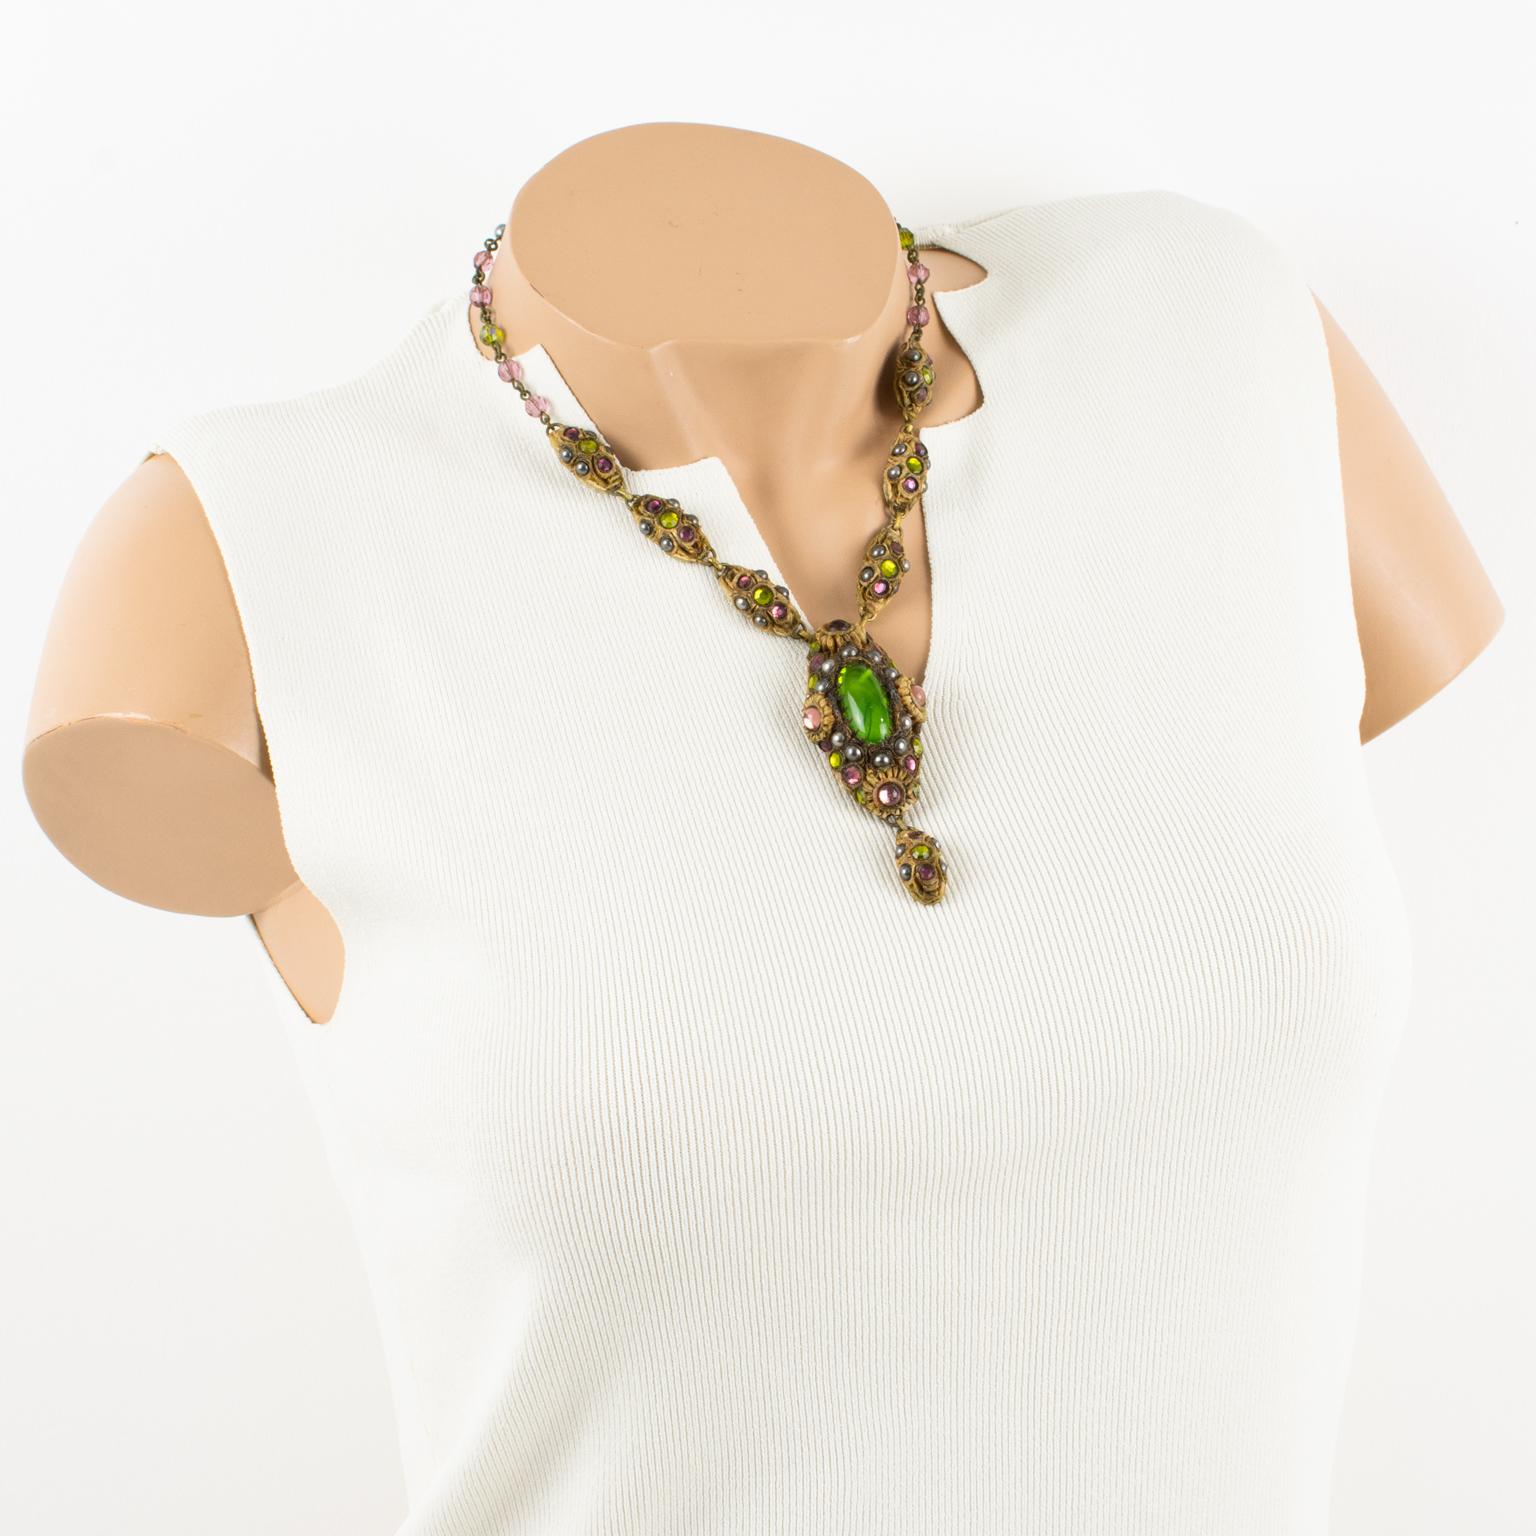 L'artiste joaillier français Henry Perichon (alias Henry) a conçu ce magnifique collier en résine Talosel dans les années 1960. Le collier comporte des pendentifs ovales en résine Talosel marron-beige surmontés de perles noires et de cabochons en